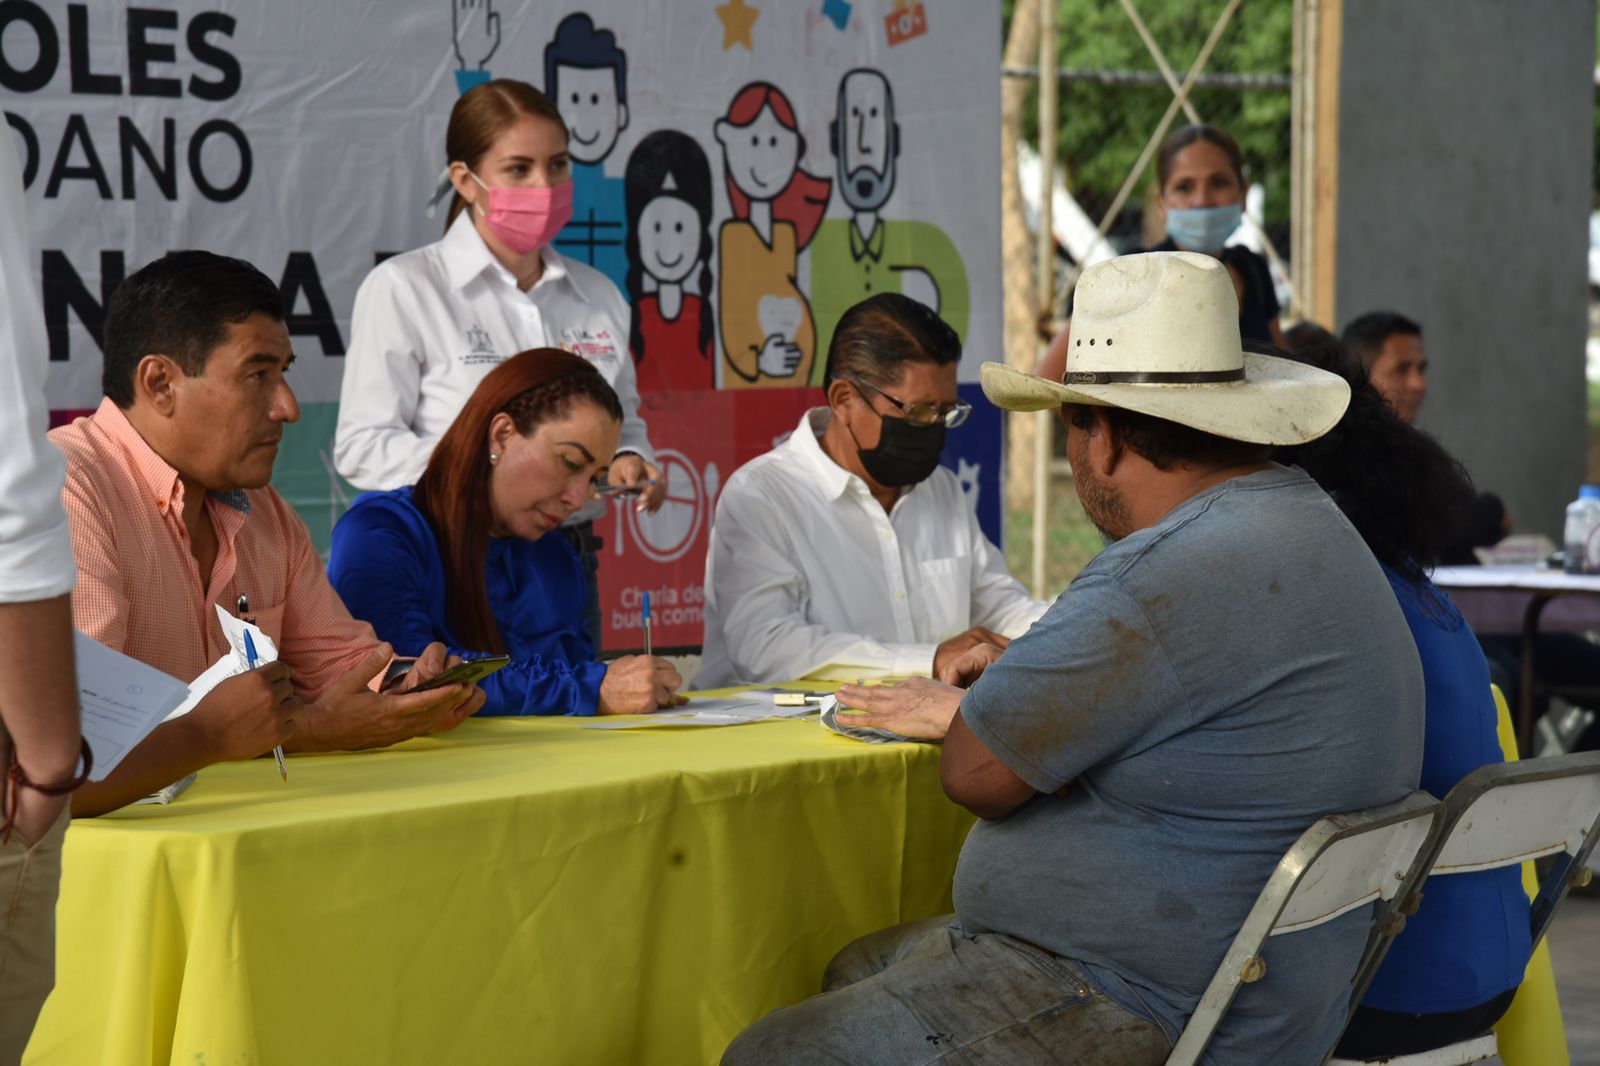 Atiende Tey Gutiérrez a 90 personas en Miércoles Ciudadano de Villas de Oro